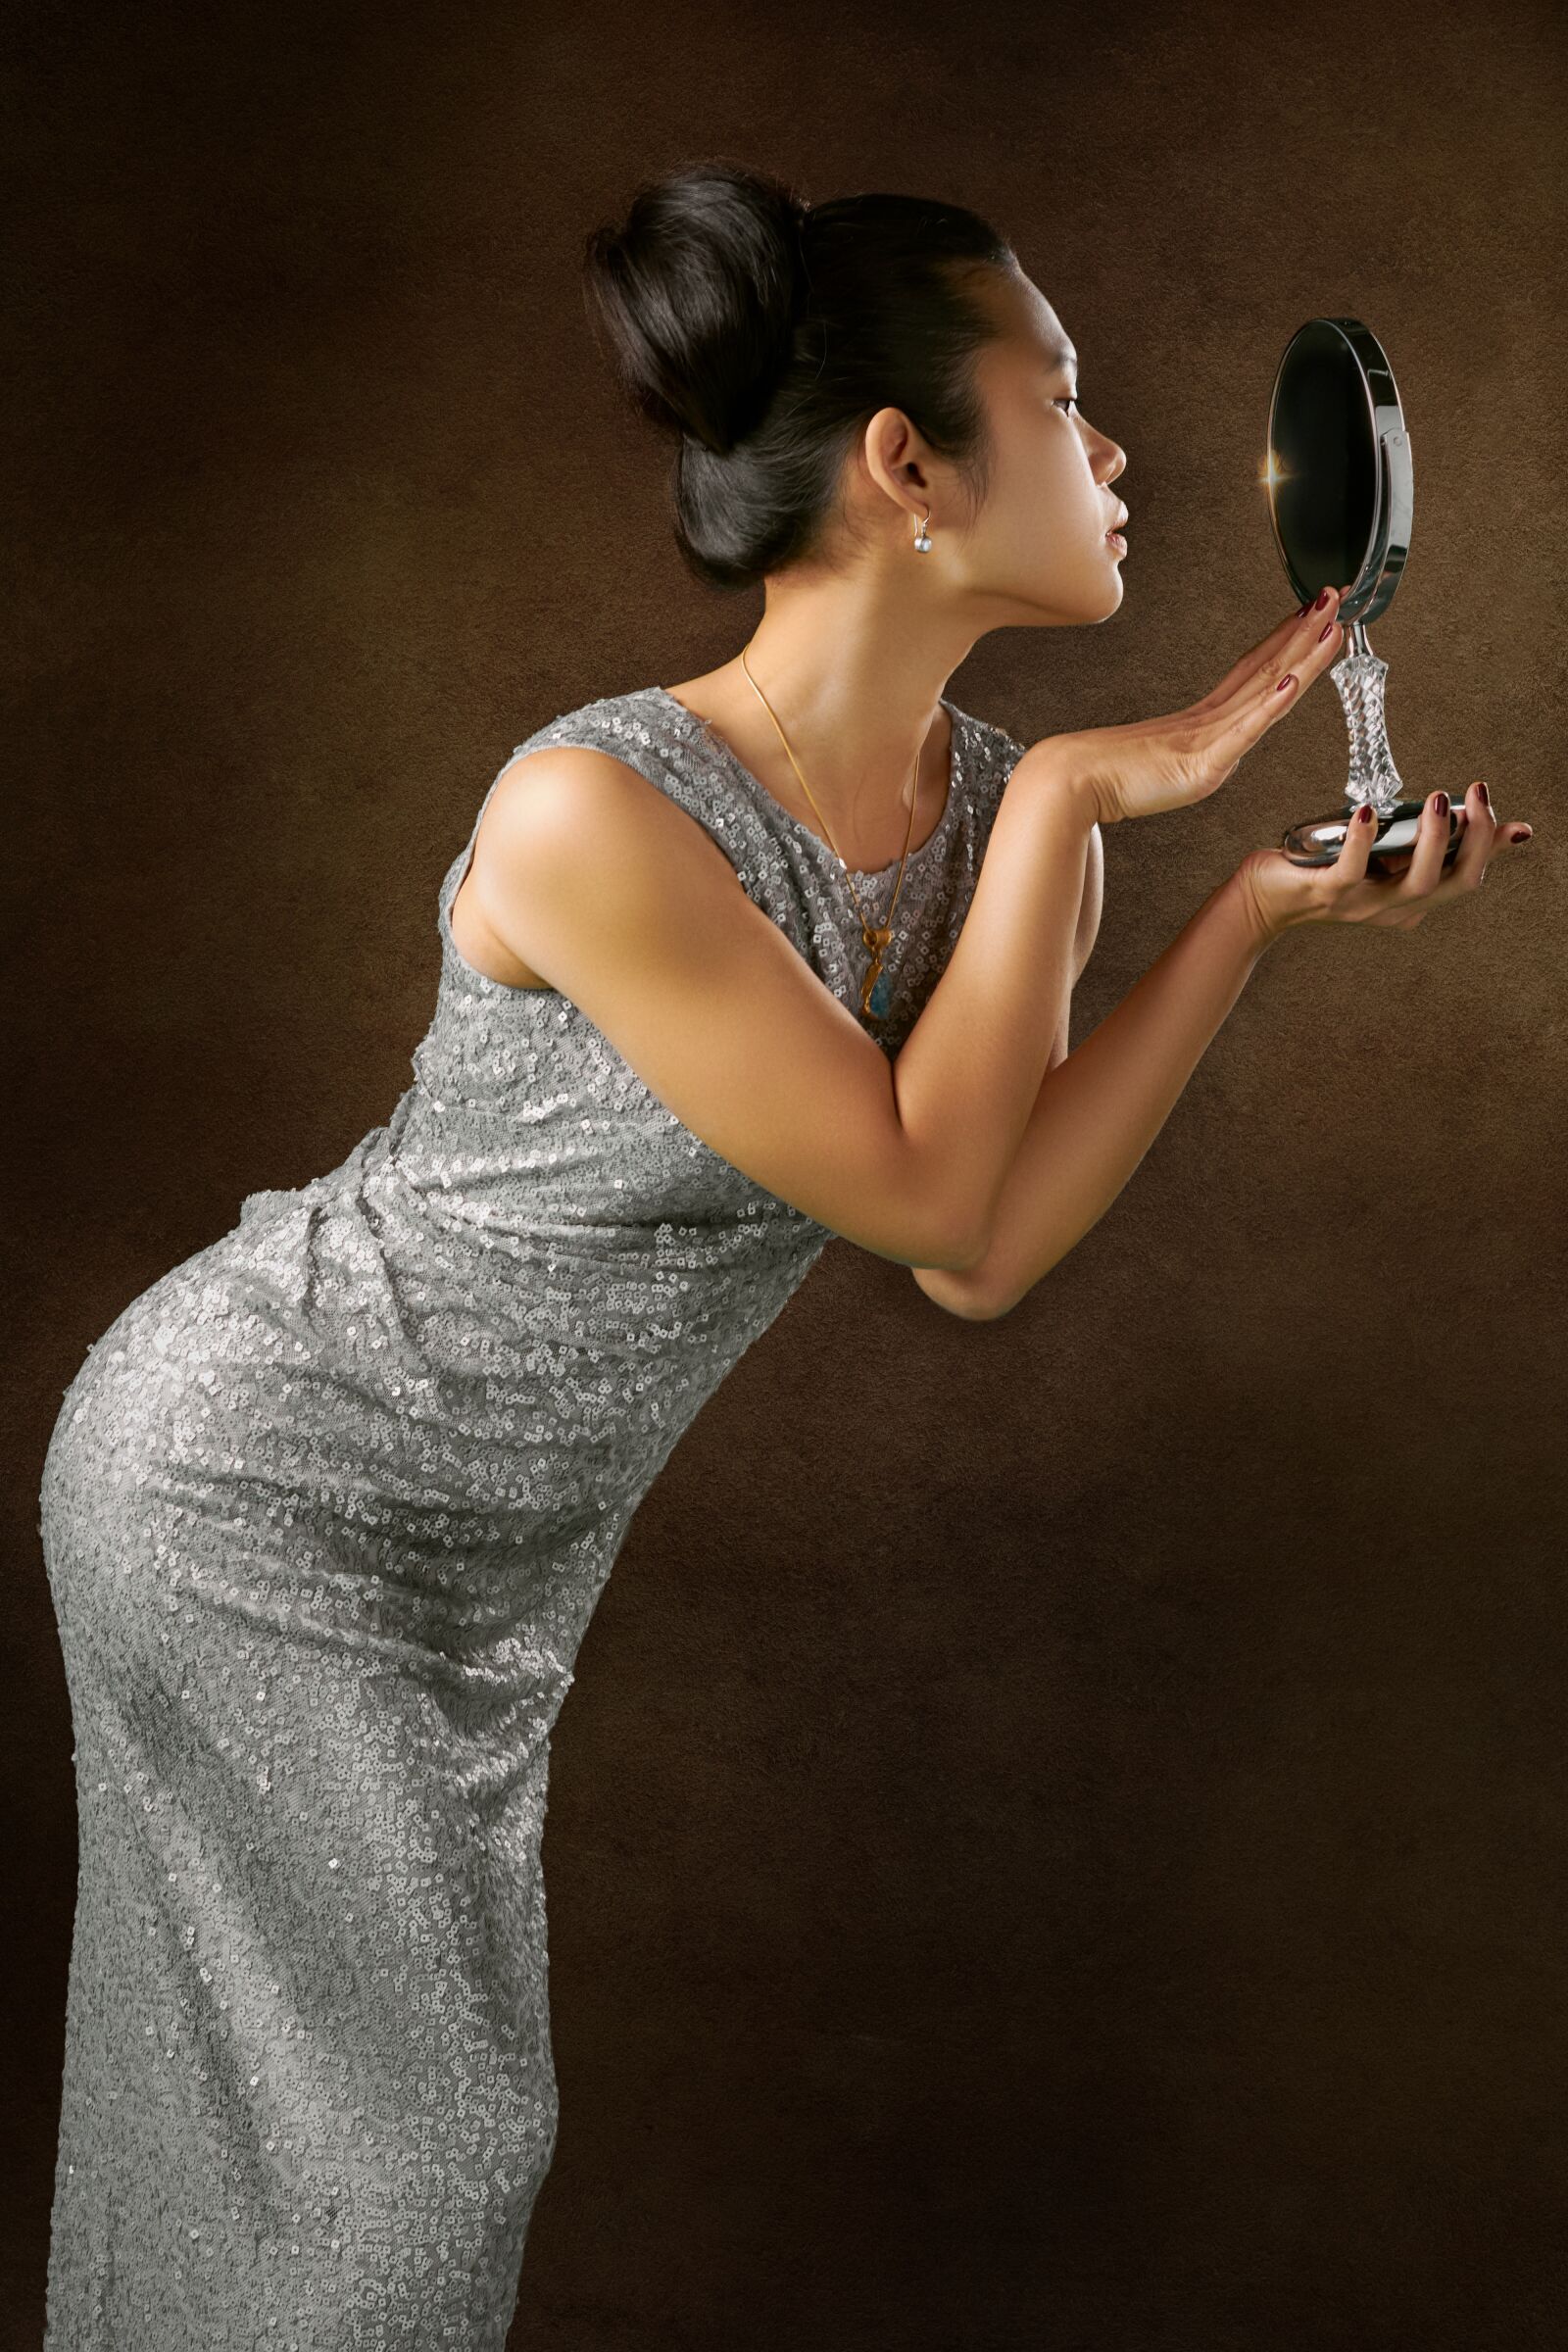 Nikon AF-S Nikkor 50mm F1.4G sample photo. Girl, mirror, portrait photography